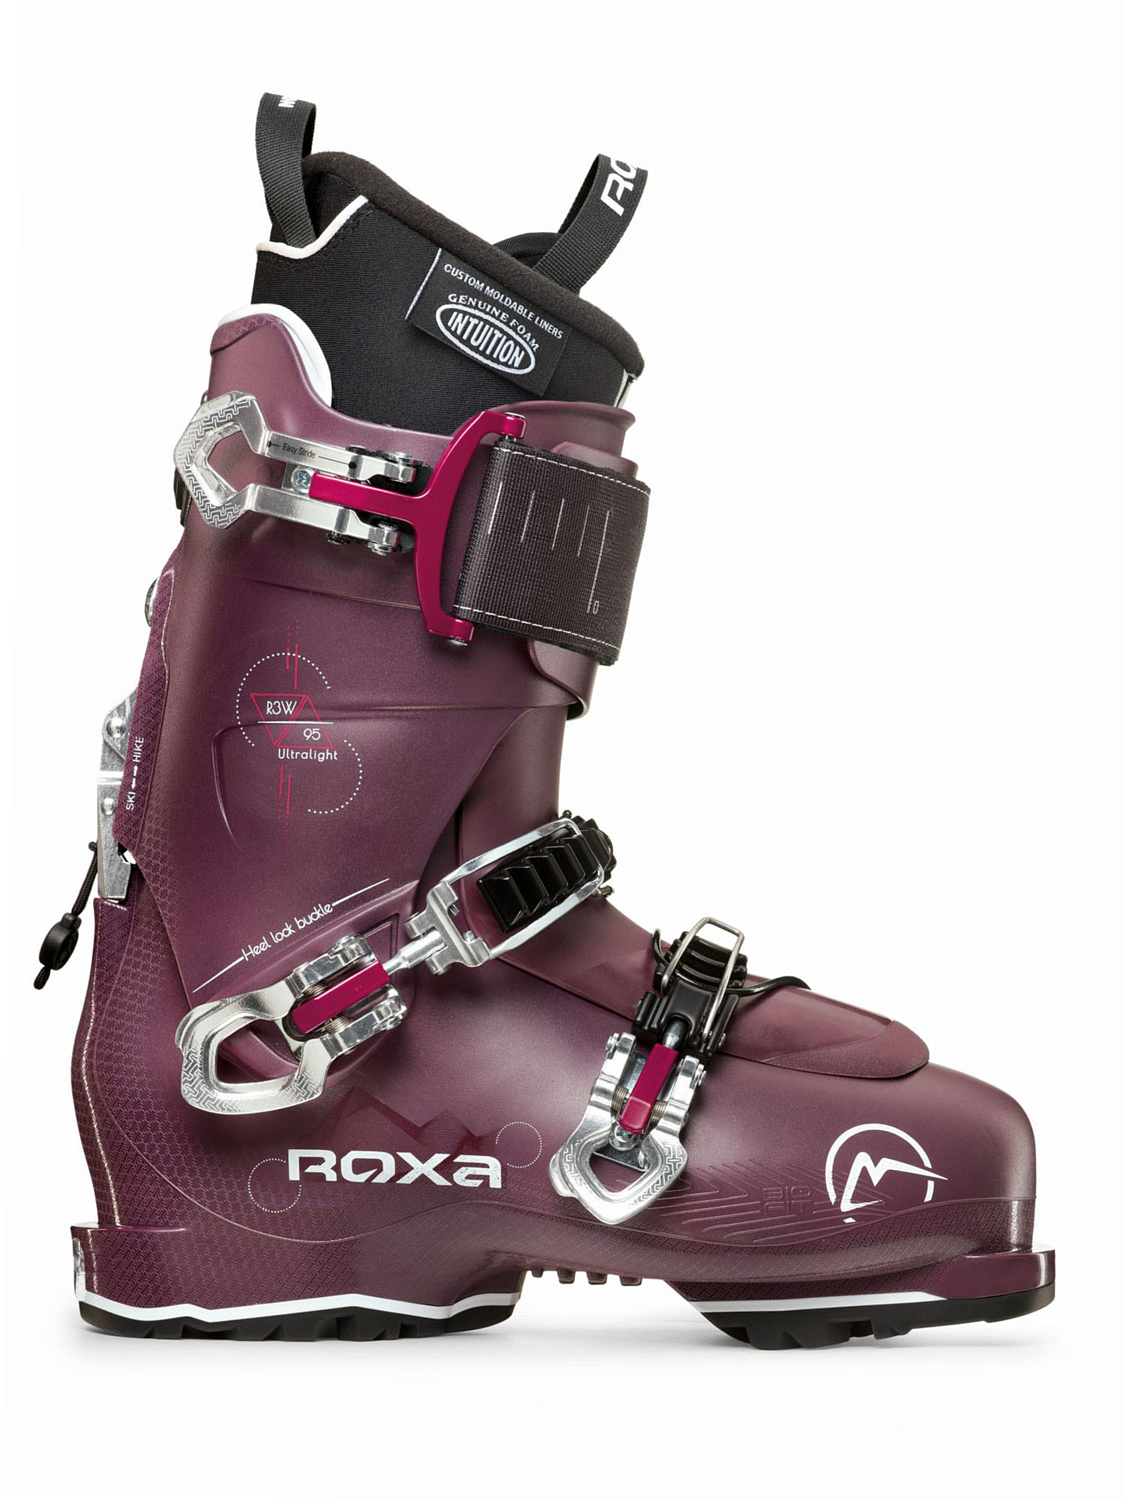 Горнолыжные ботинки ROXA R3W 95 I.R. GW Plum/Plum